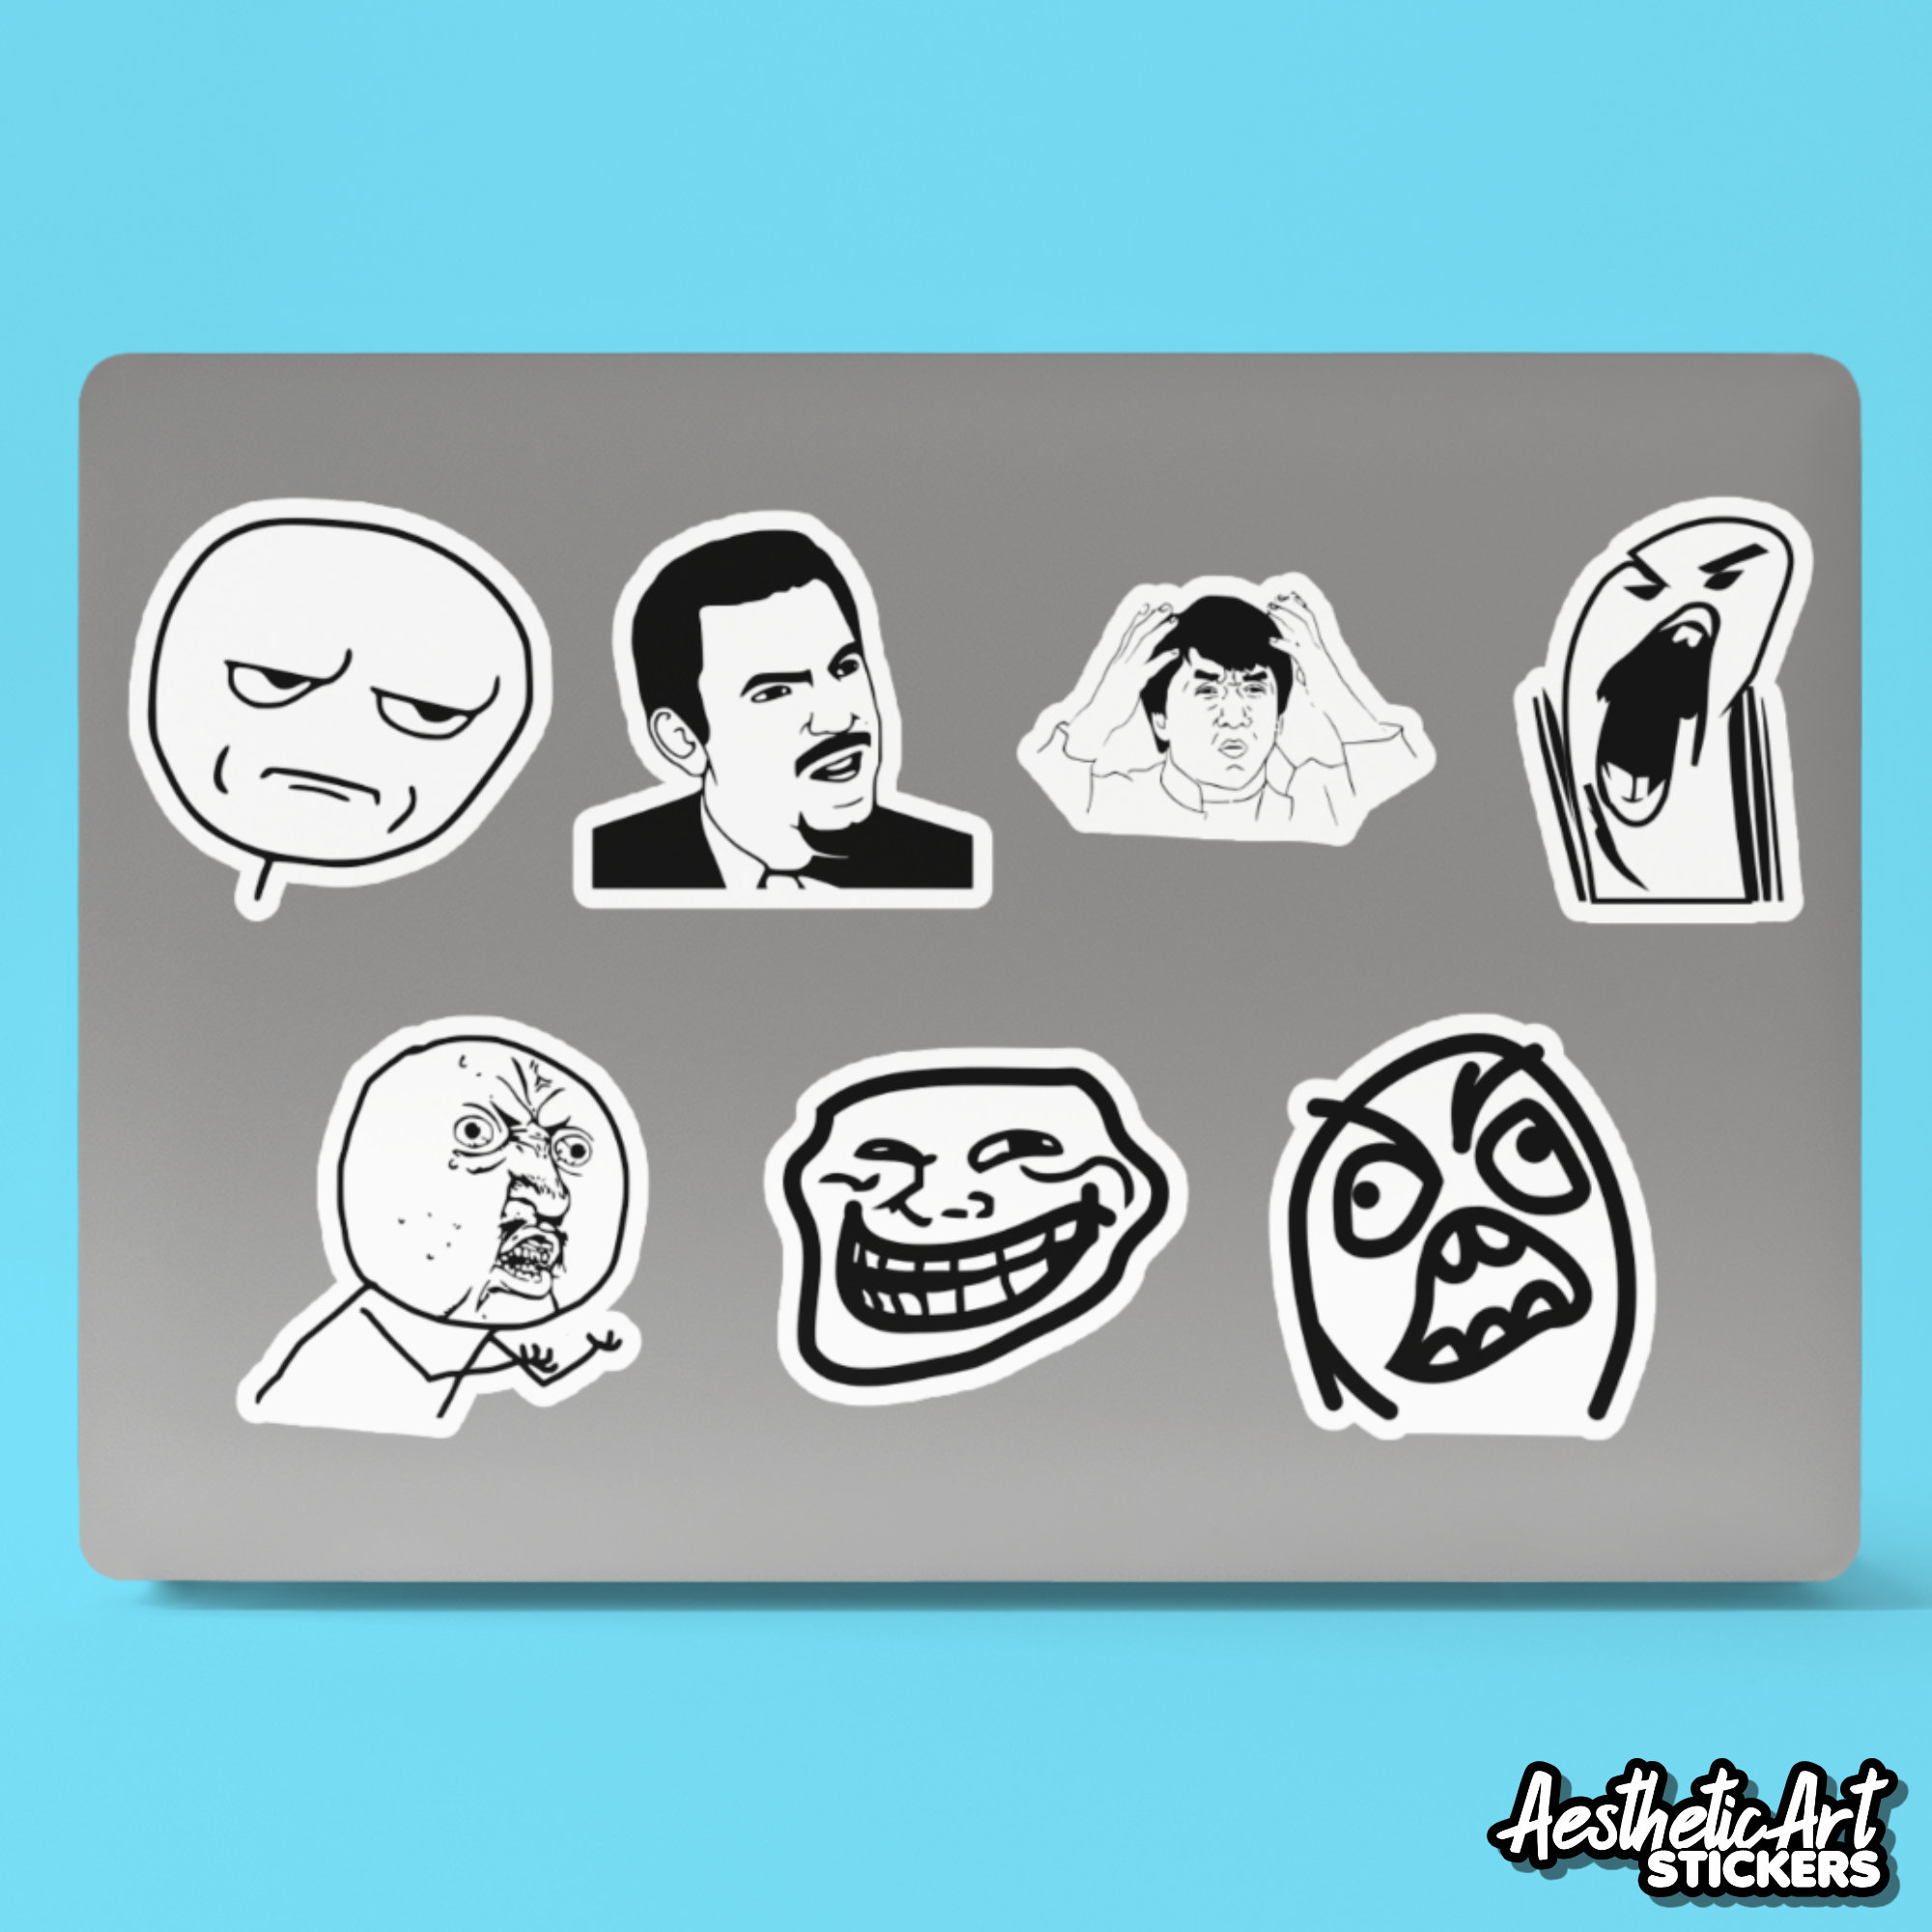 Troll Face Meme Sticker Vinyl Decal - Car Window Trollface Wall Boat Laptop